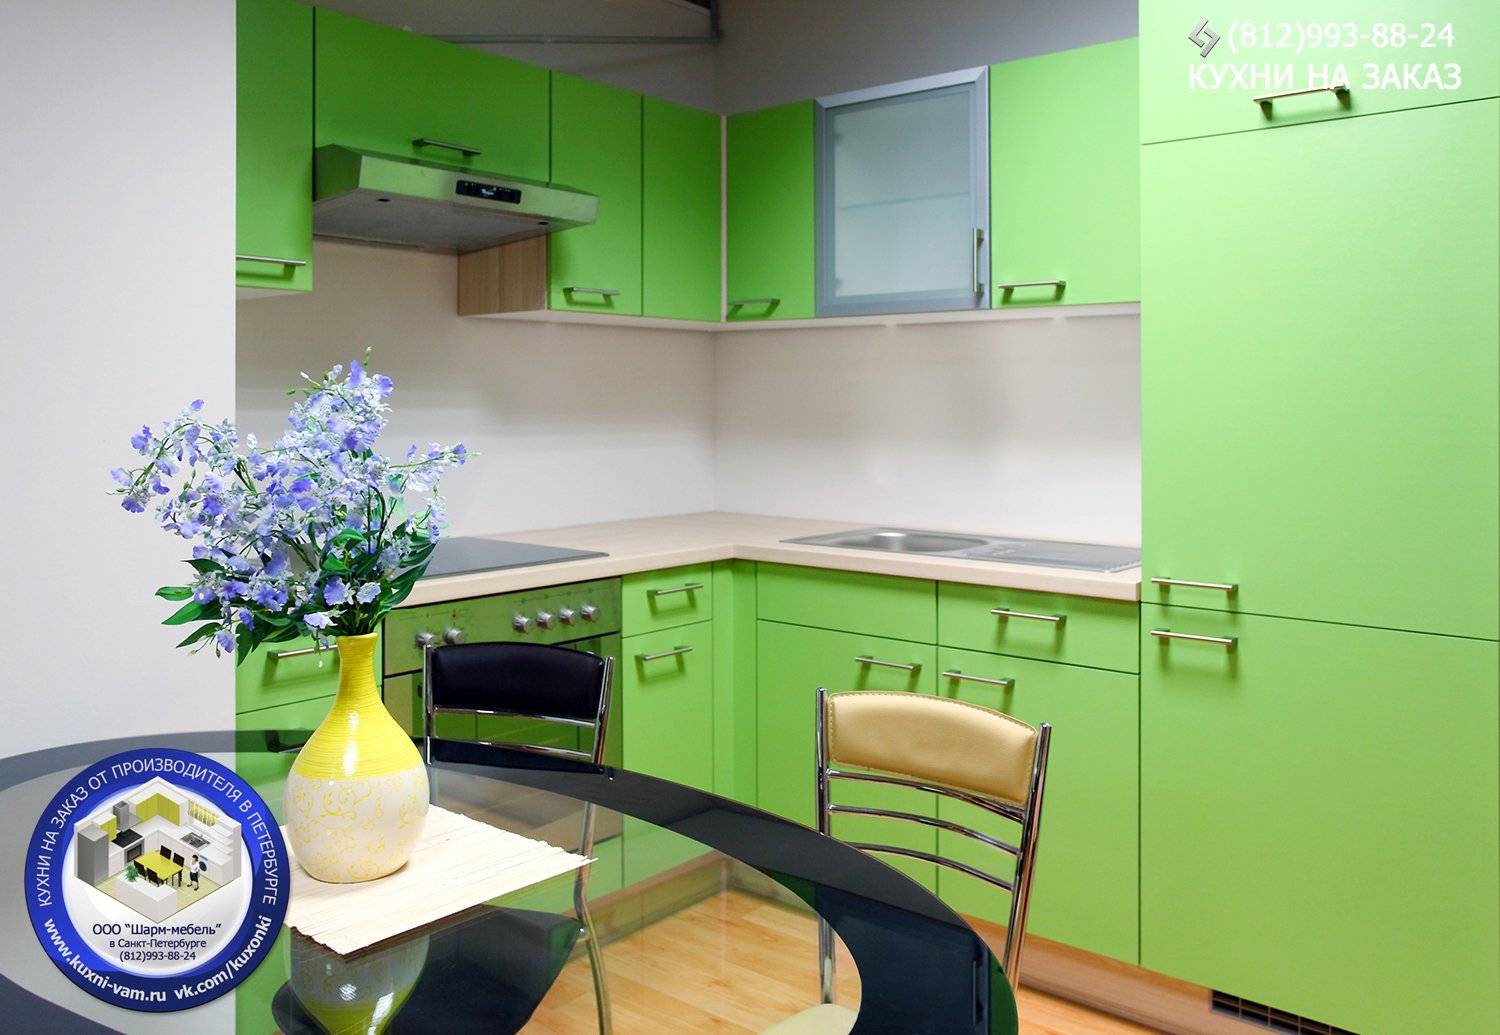 Сочетание цветов в интерьере кухни: варианты расцветки кухонного гарнитура